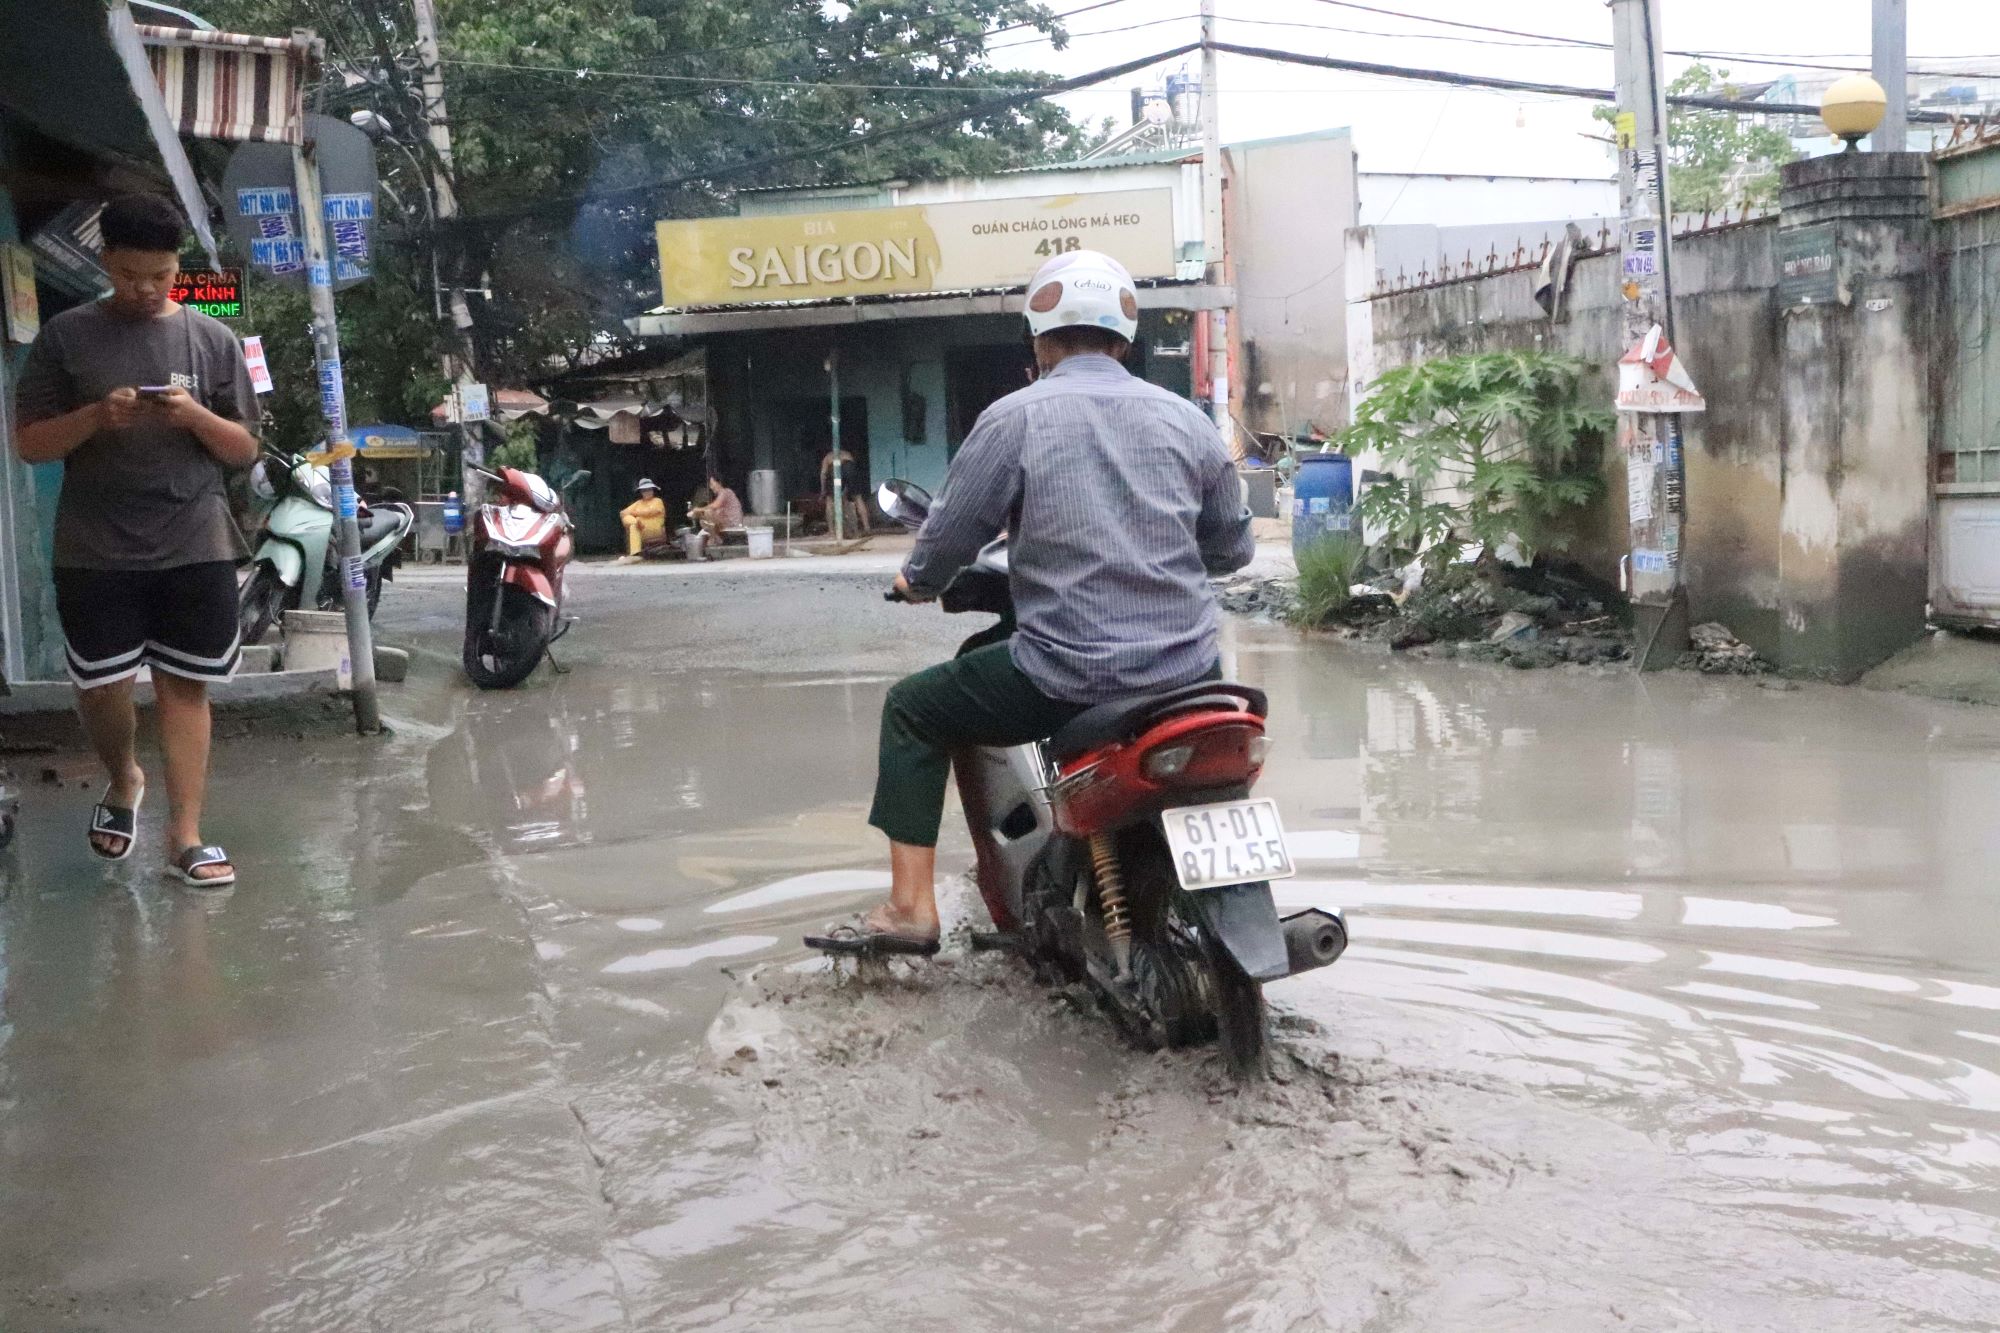 Con đường ngập nửa năm nước chưa rút ở Sài Gòn - Ảnh 4.